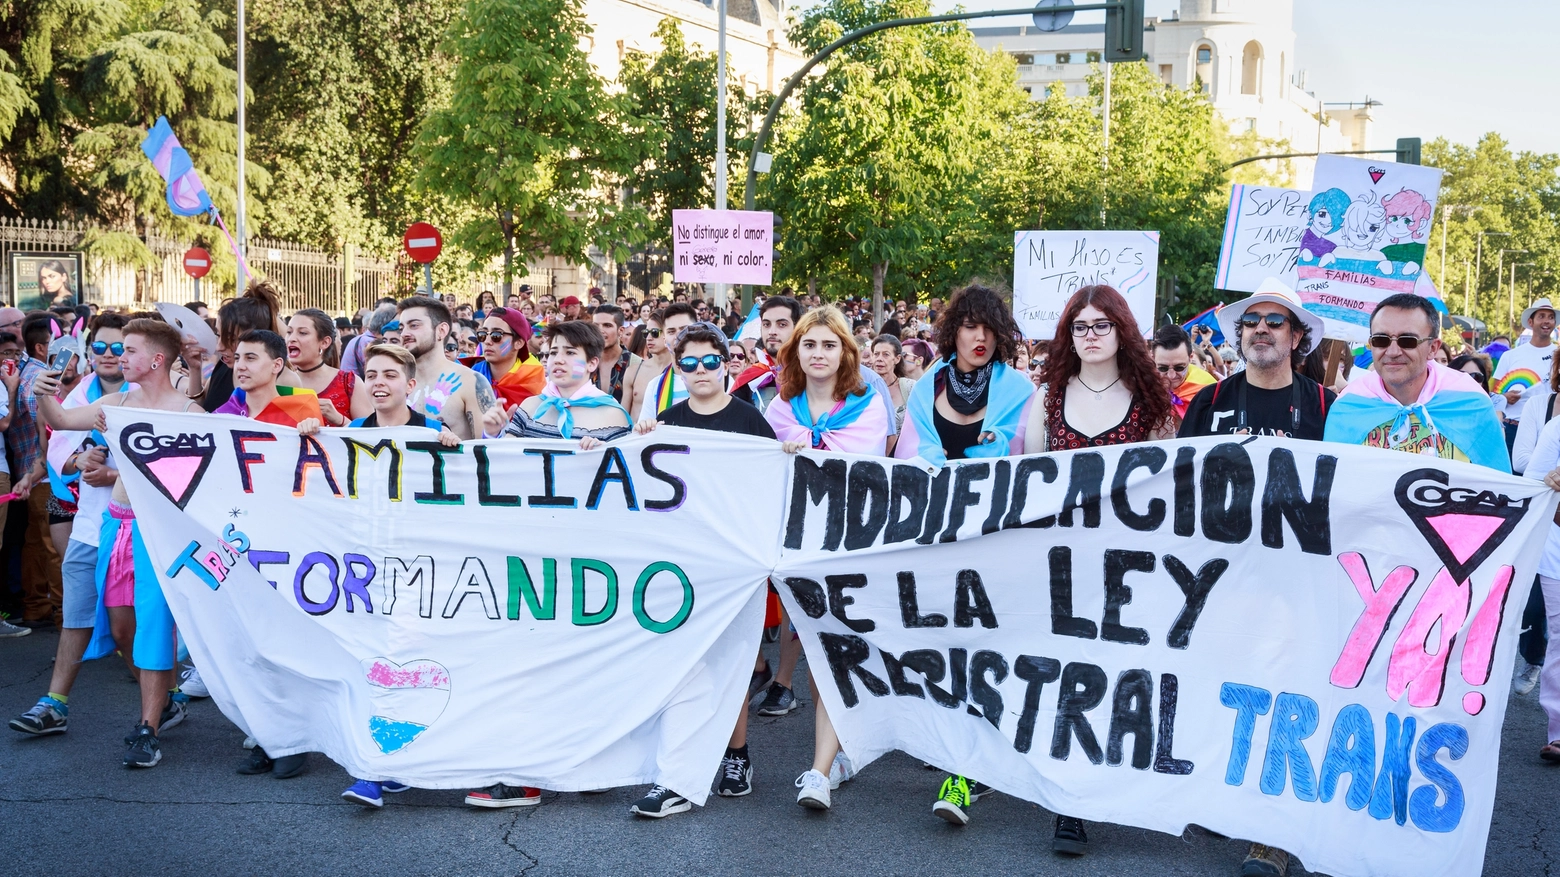 La ministra per l’Uguaglianza ha annunciato il ricorso dell’esecutivo centrale contro le leggi –regressive – regionali che limitano i diritti della comunità Lgbt e delle persone trans*. Il 28 giugno istituito il Pride Day